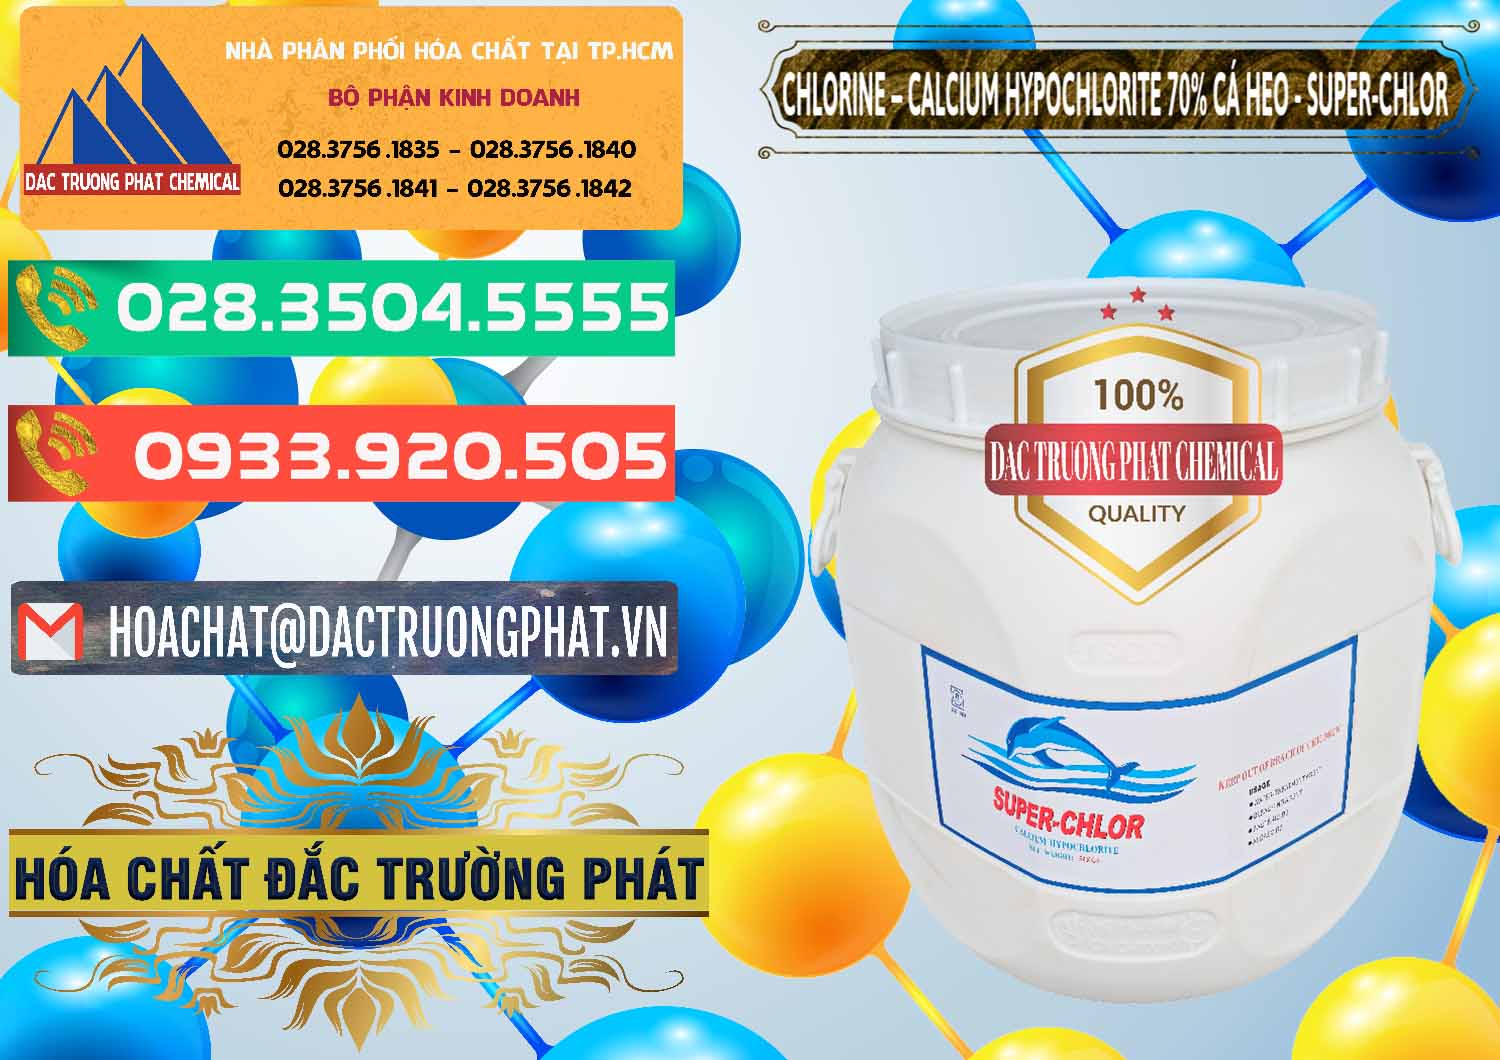 Công ty chuyên bán và phân phối Clorin - Chlorine Cá Heo 70% Super Chlor Trung Quốc China - 0058 - Nhà phân phối - cung cấp hóa chất tại TP.HCM - congtyhoachat.com.vn